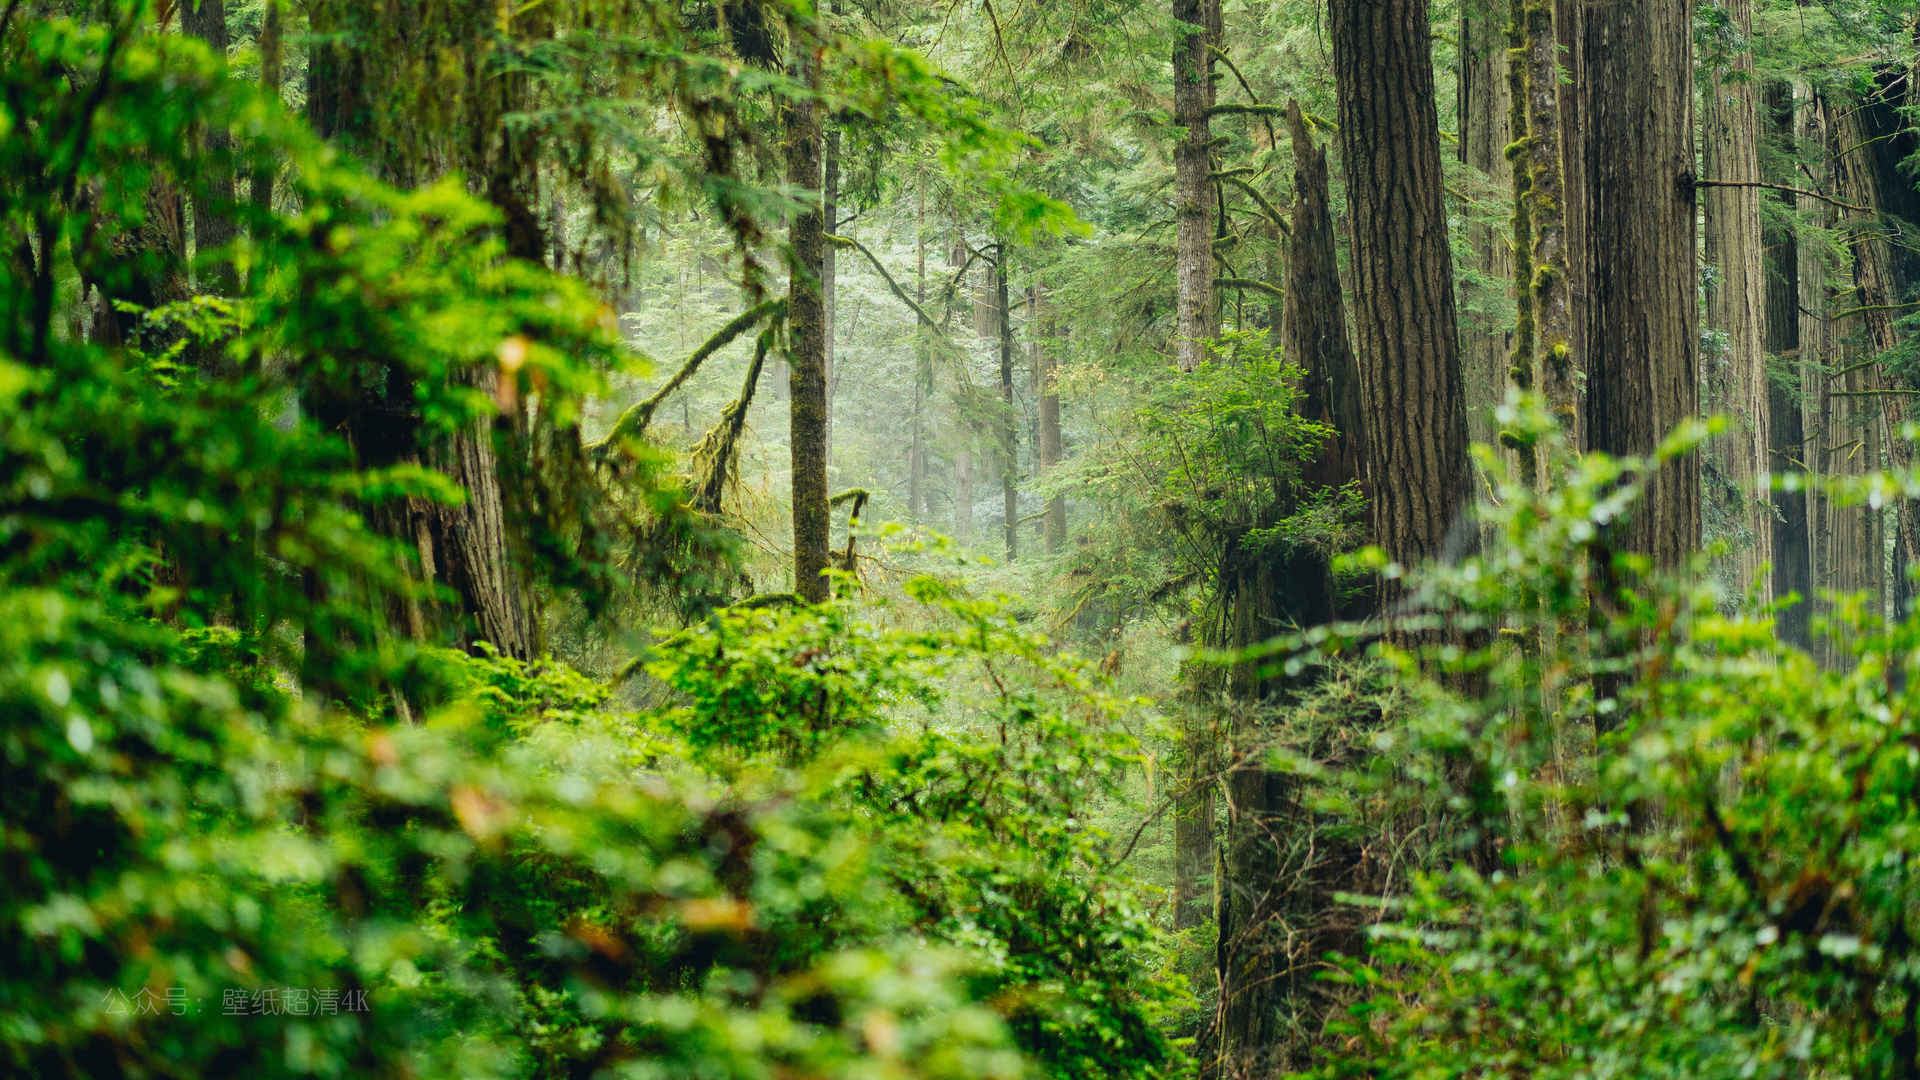 森林静谧优美风景图片壁纸